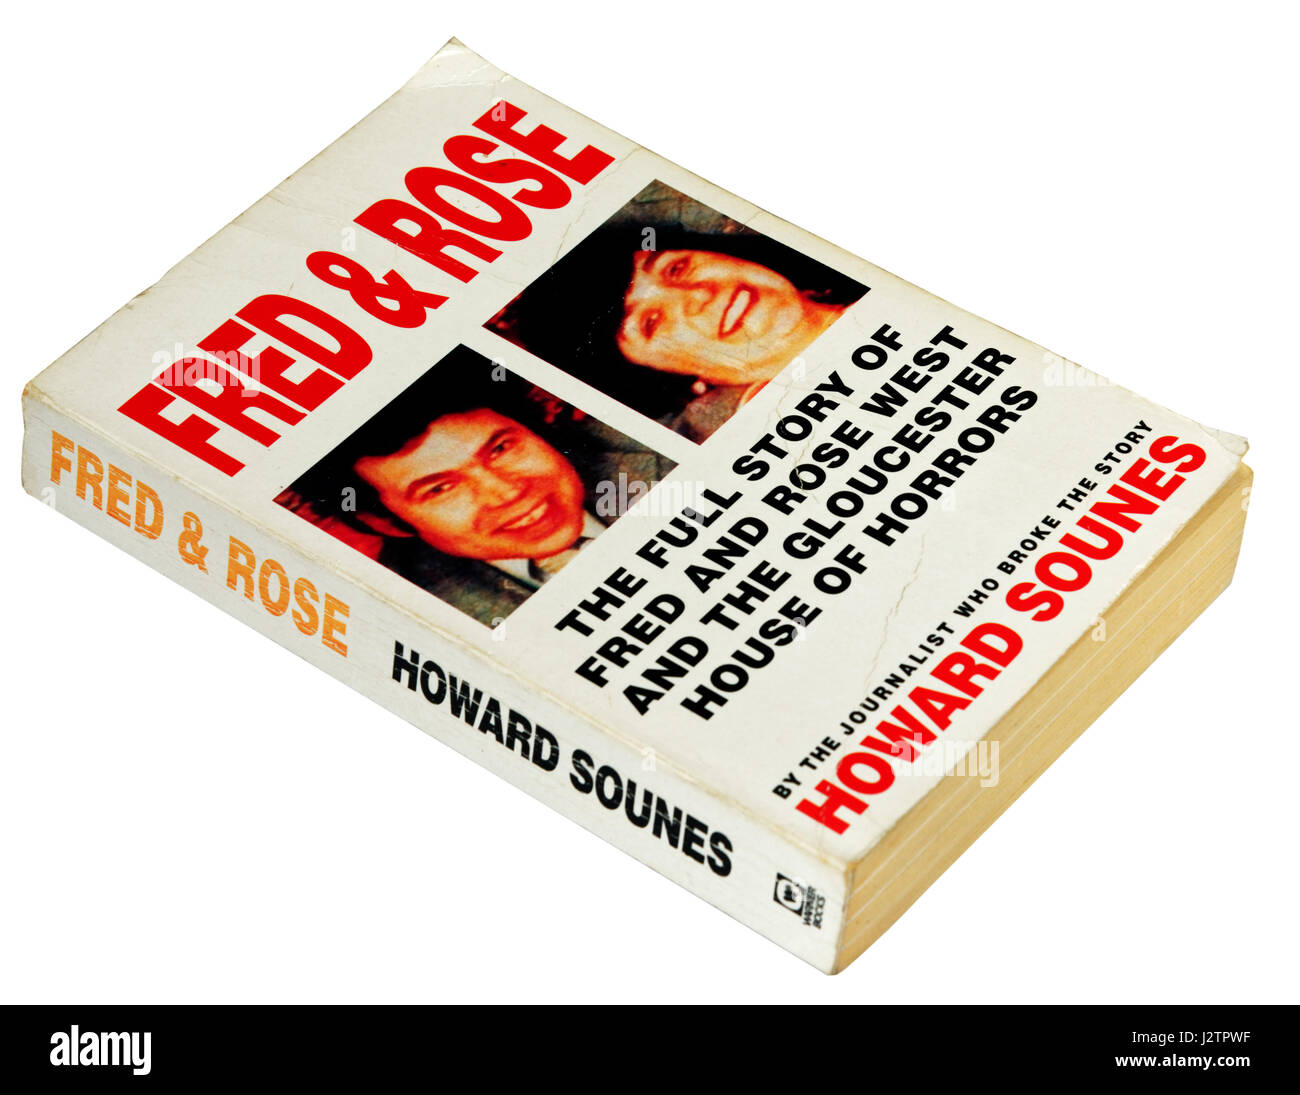 Fred et Rose par Howard Sounes, un livre sur Fred et Rose à l'Ouest qui sont parmi les plus grands criminels de la Grande-Bretagne. Banque D'Images